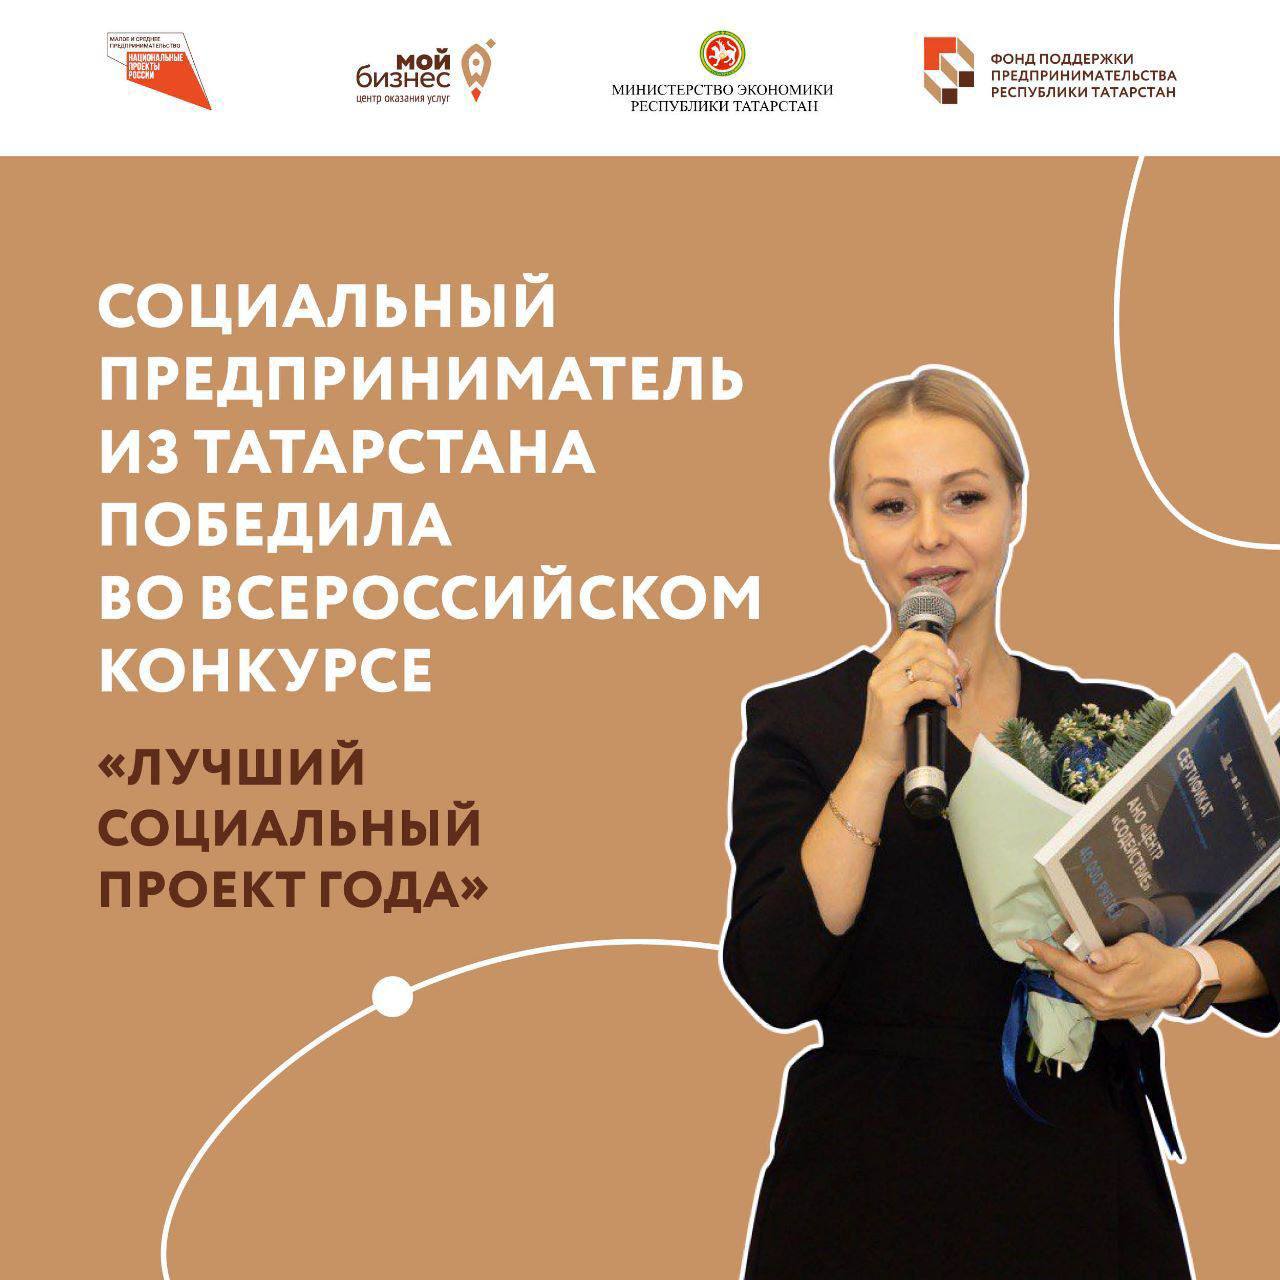 Социальный предприниматель из Татарстана победила во всероссийском конкурсе «Лучший социальный проект года».